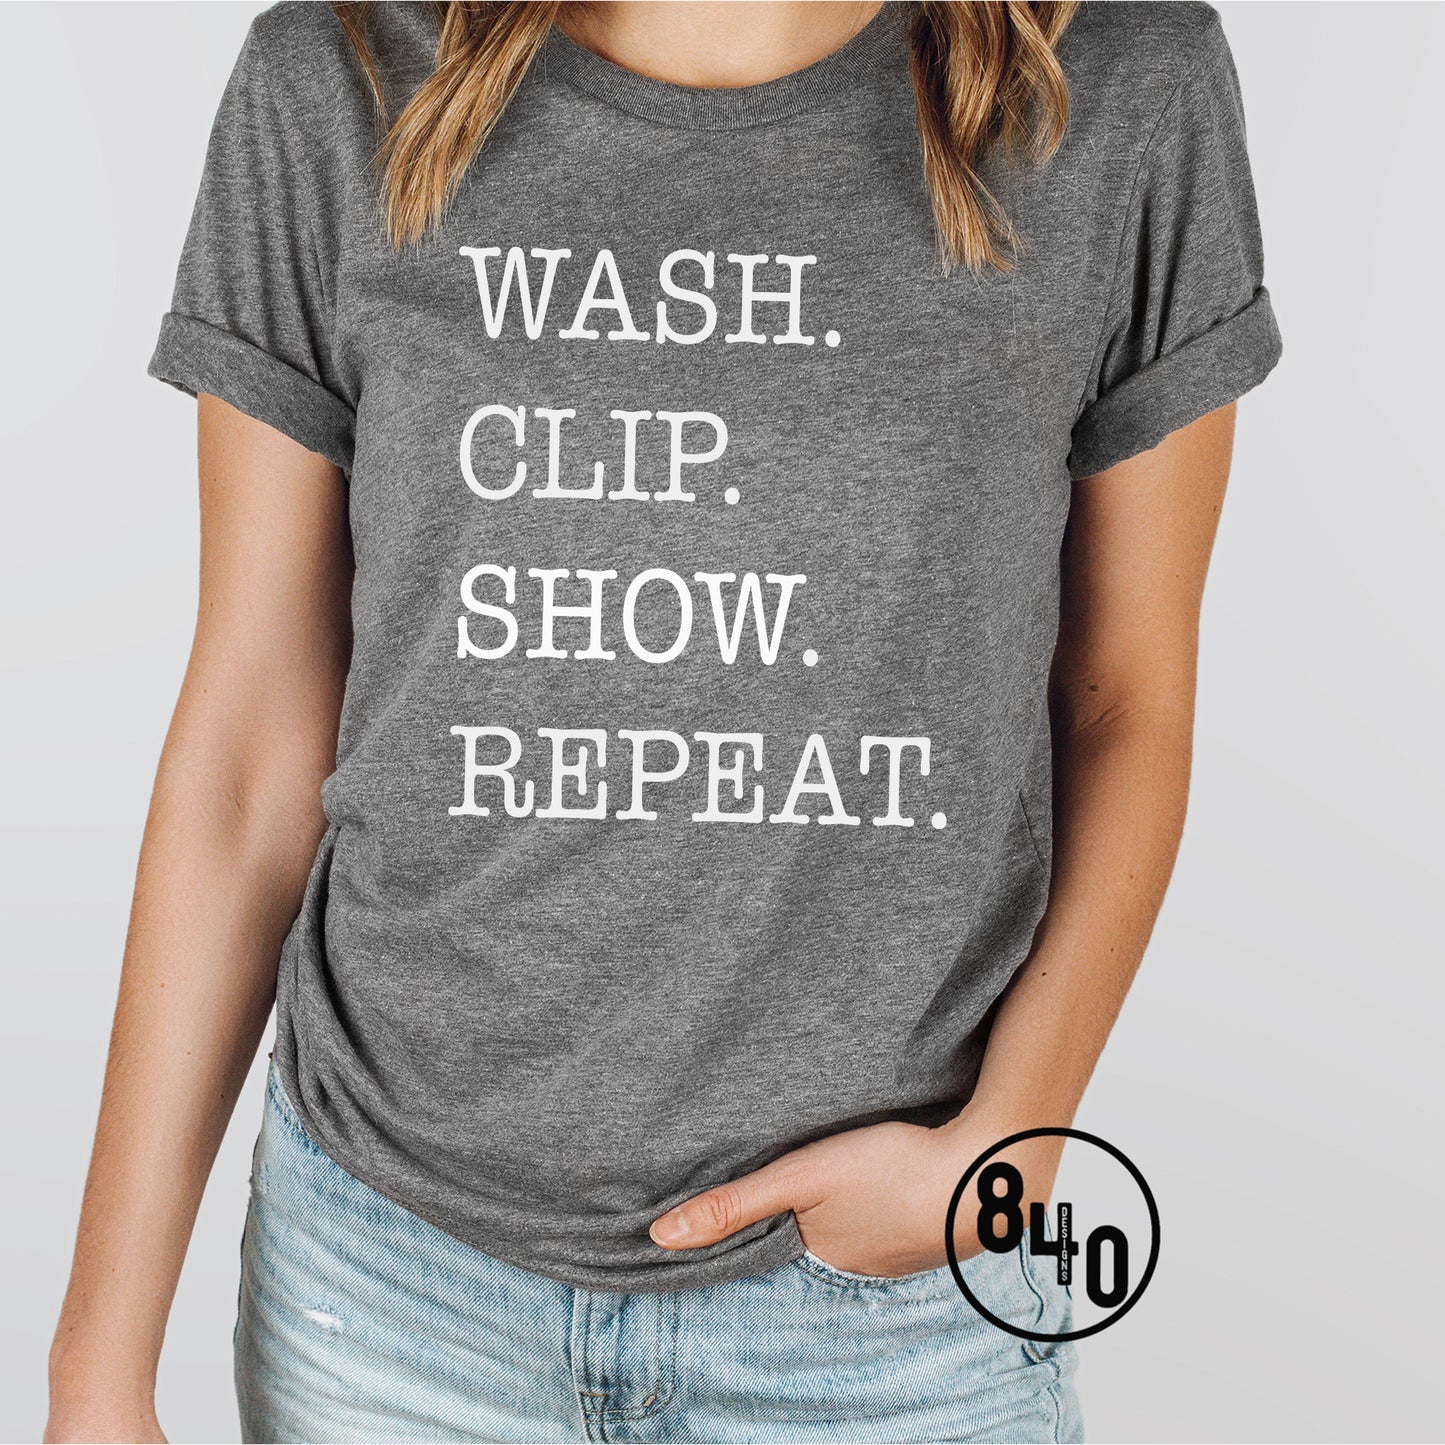 Wash. Clip. Show. Repeat. - White